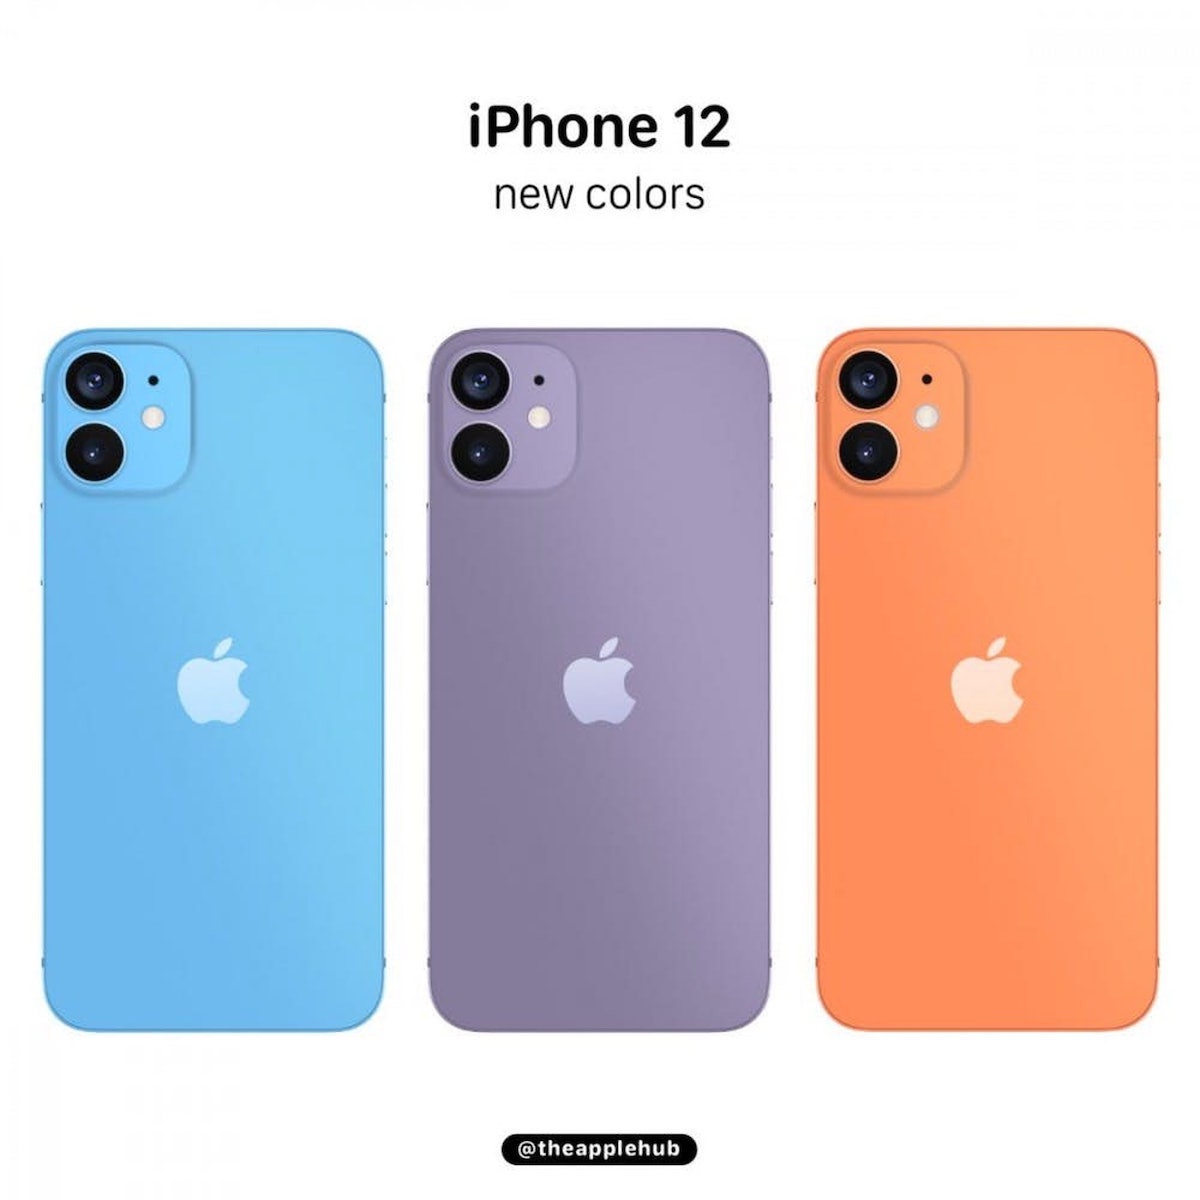 逼出果粉選色障礙 Iphone 12傳7顏色可選 改版新色 淡粉嫩 超美 智活smarter Life